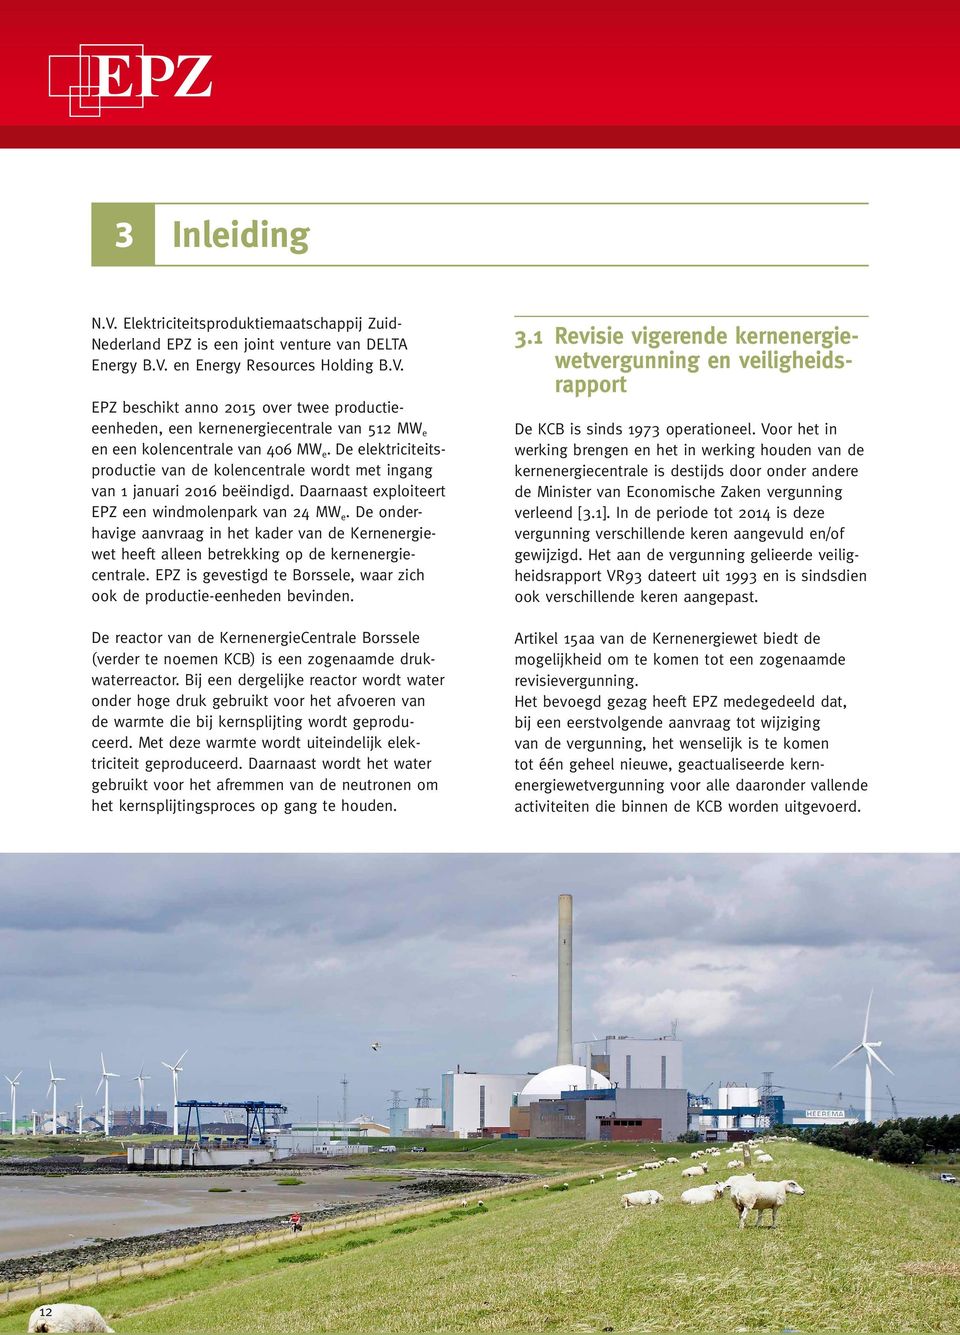 De onderhavige aanvraag in het kader van de Kernenergiewet heeft alleen betrekking op de kernenergiecentrale. EPZ is gevestigd te Borssele, waar zich ook de productie-eenheden bevinden.